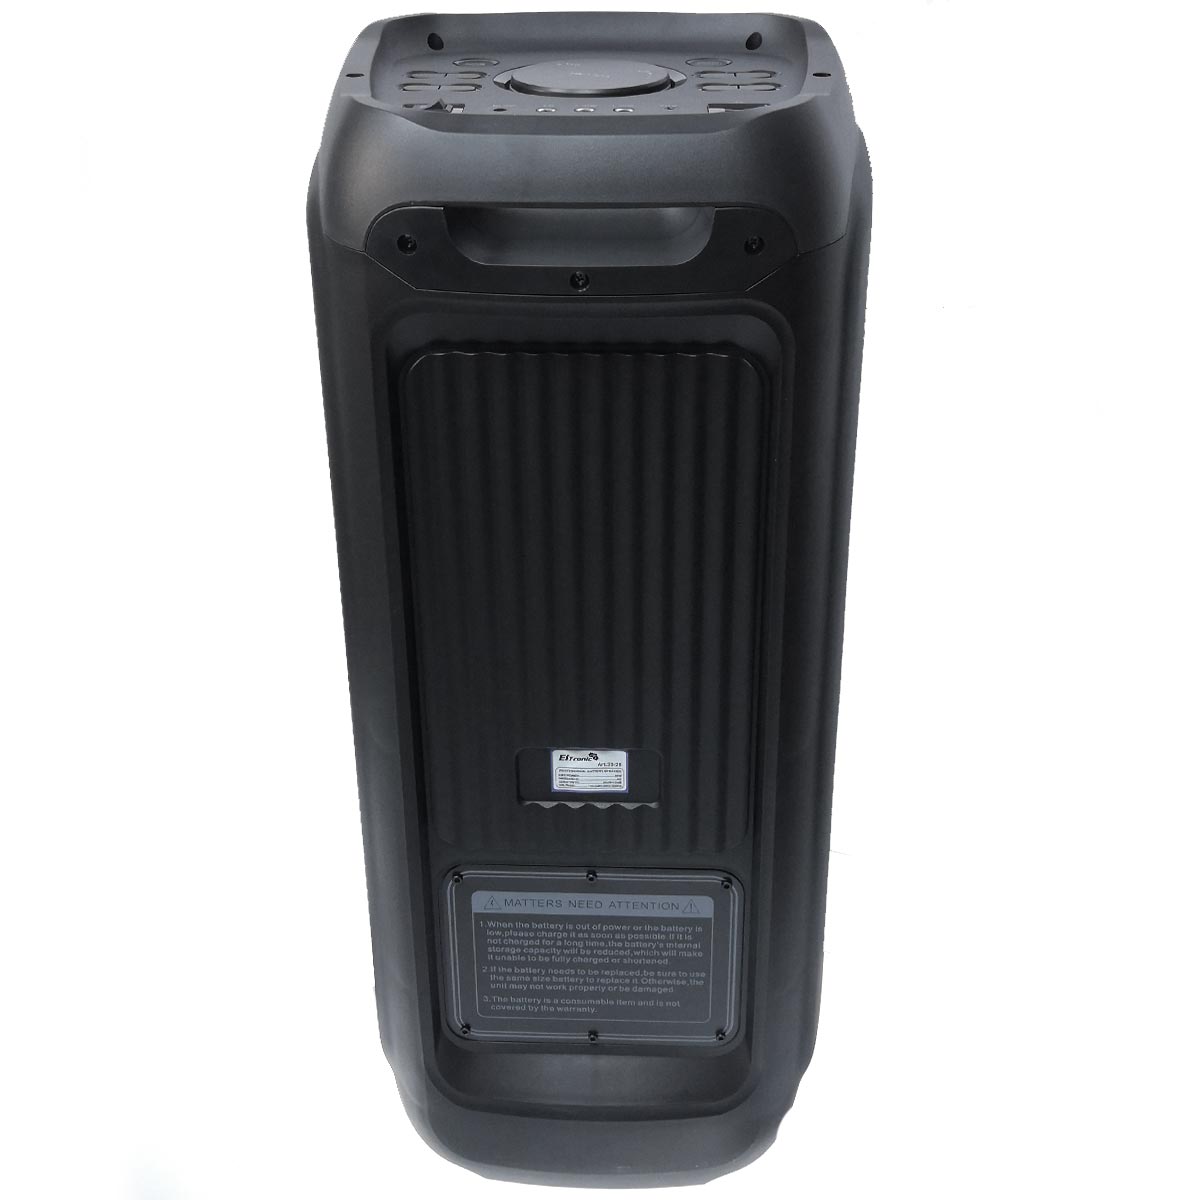 Активная акустическая система (комбик) 8"х2 Eltronic EL 20-26 FIRE BOX 800 TWS, RGB подсветка, цвет черный